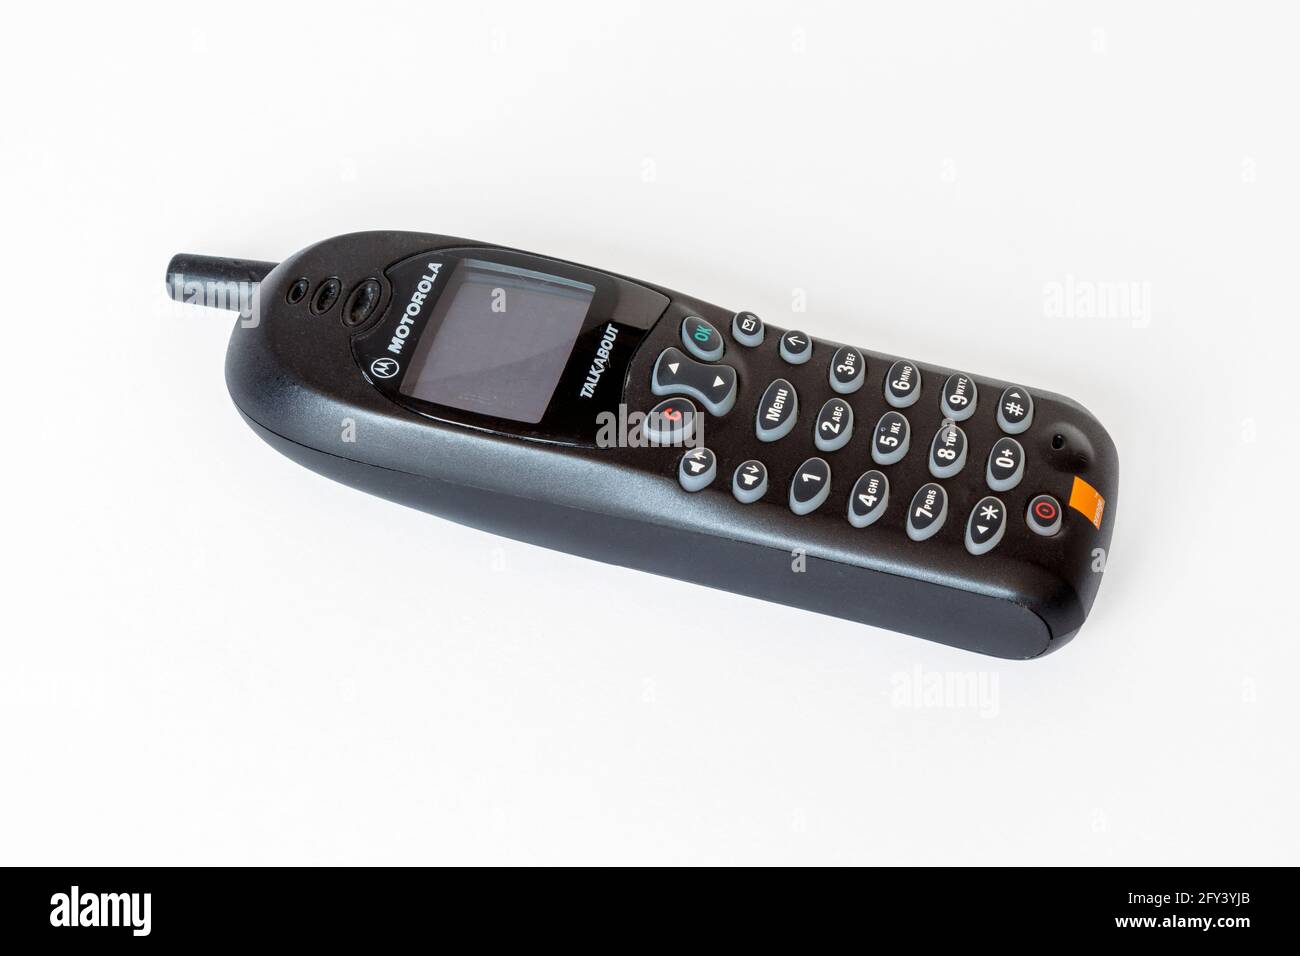 Téléphone portable classique Motorola Talkabout 108e isolé sur fond blanc Banque D'Images